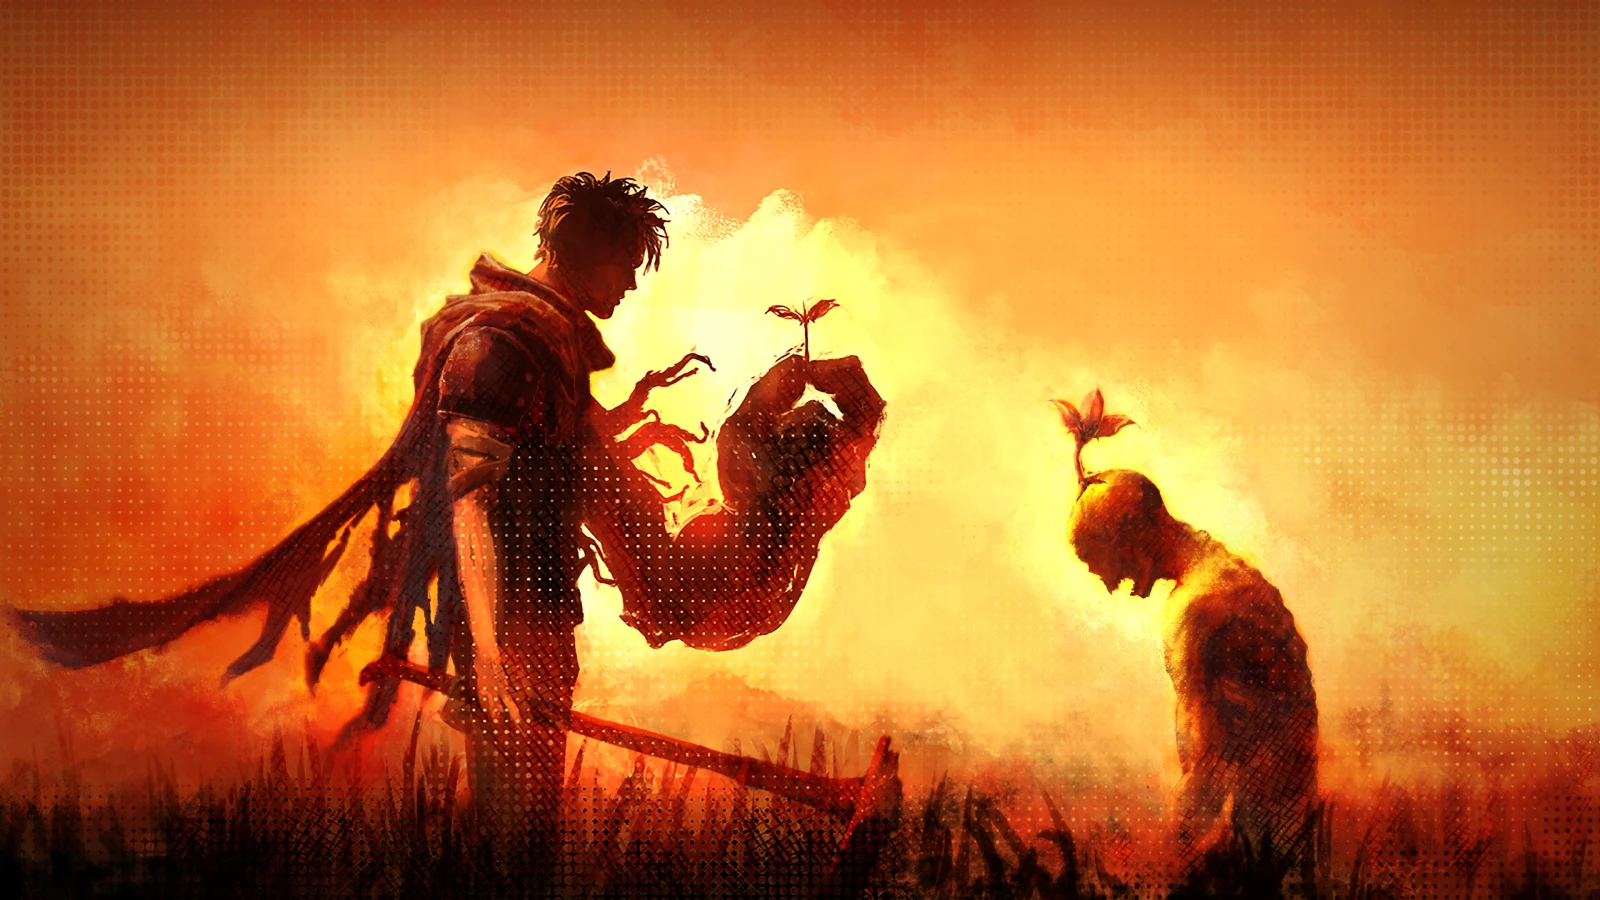 僵尸生存动作游戏《创尸纪》将在5月19日在多平台发售